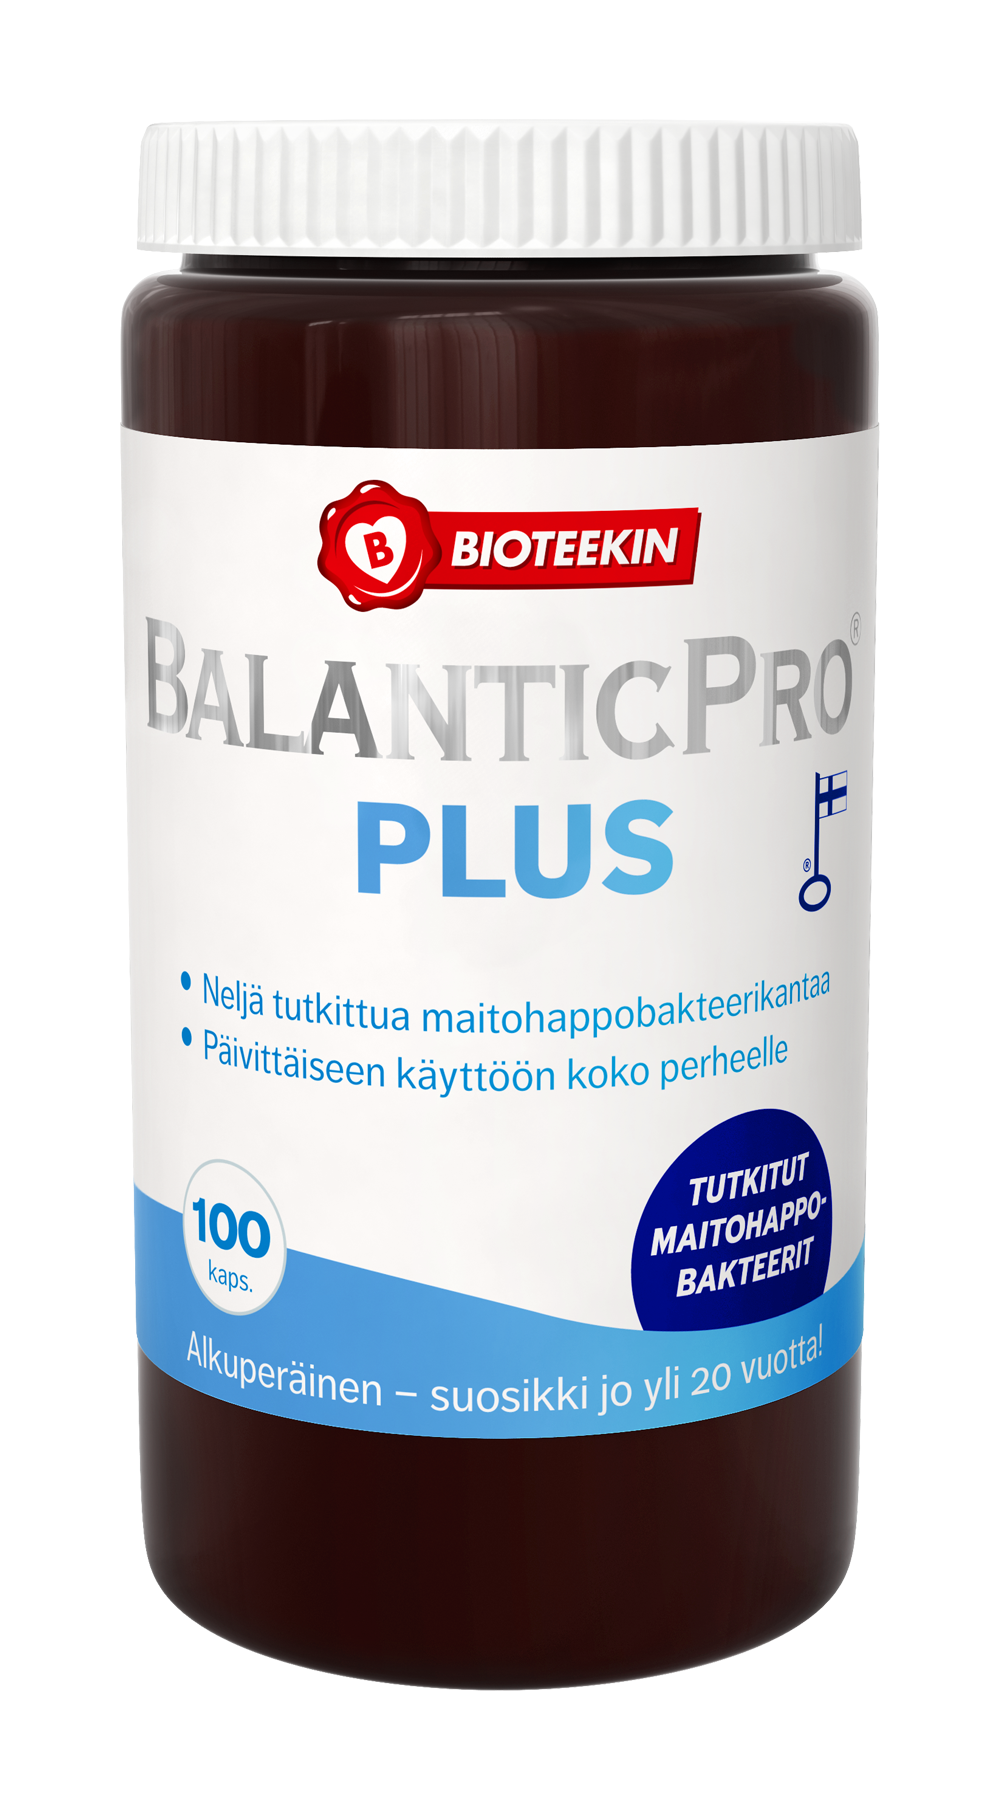 Bioteekin BalanticPro Plus - Maitohappobakteeri 100 kaps. - erä